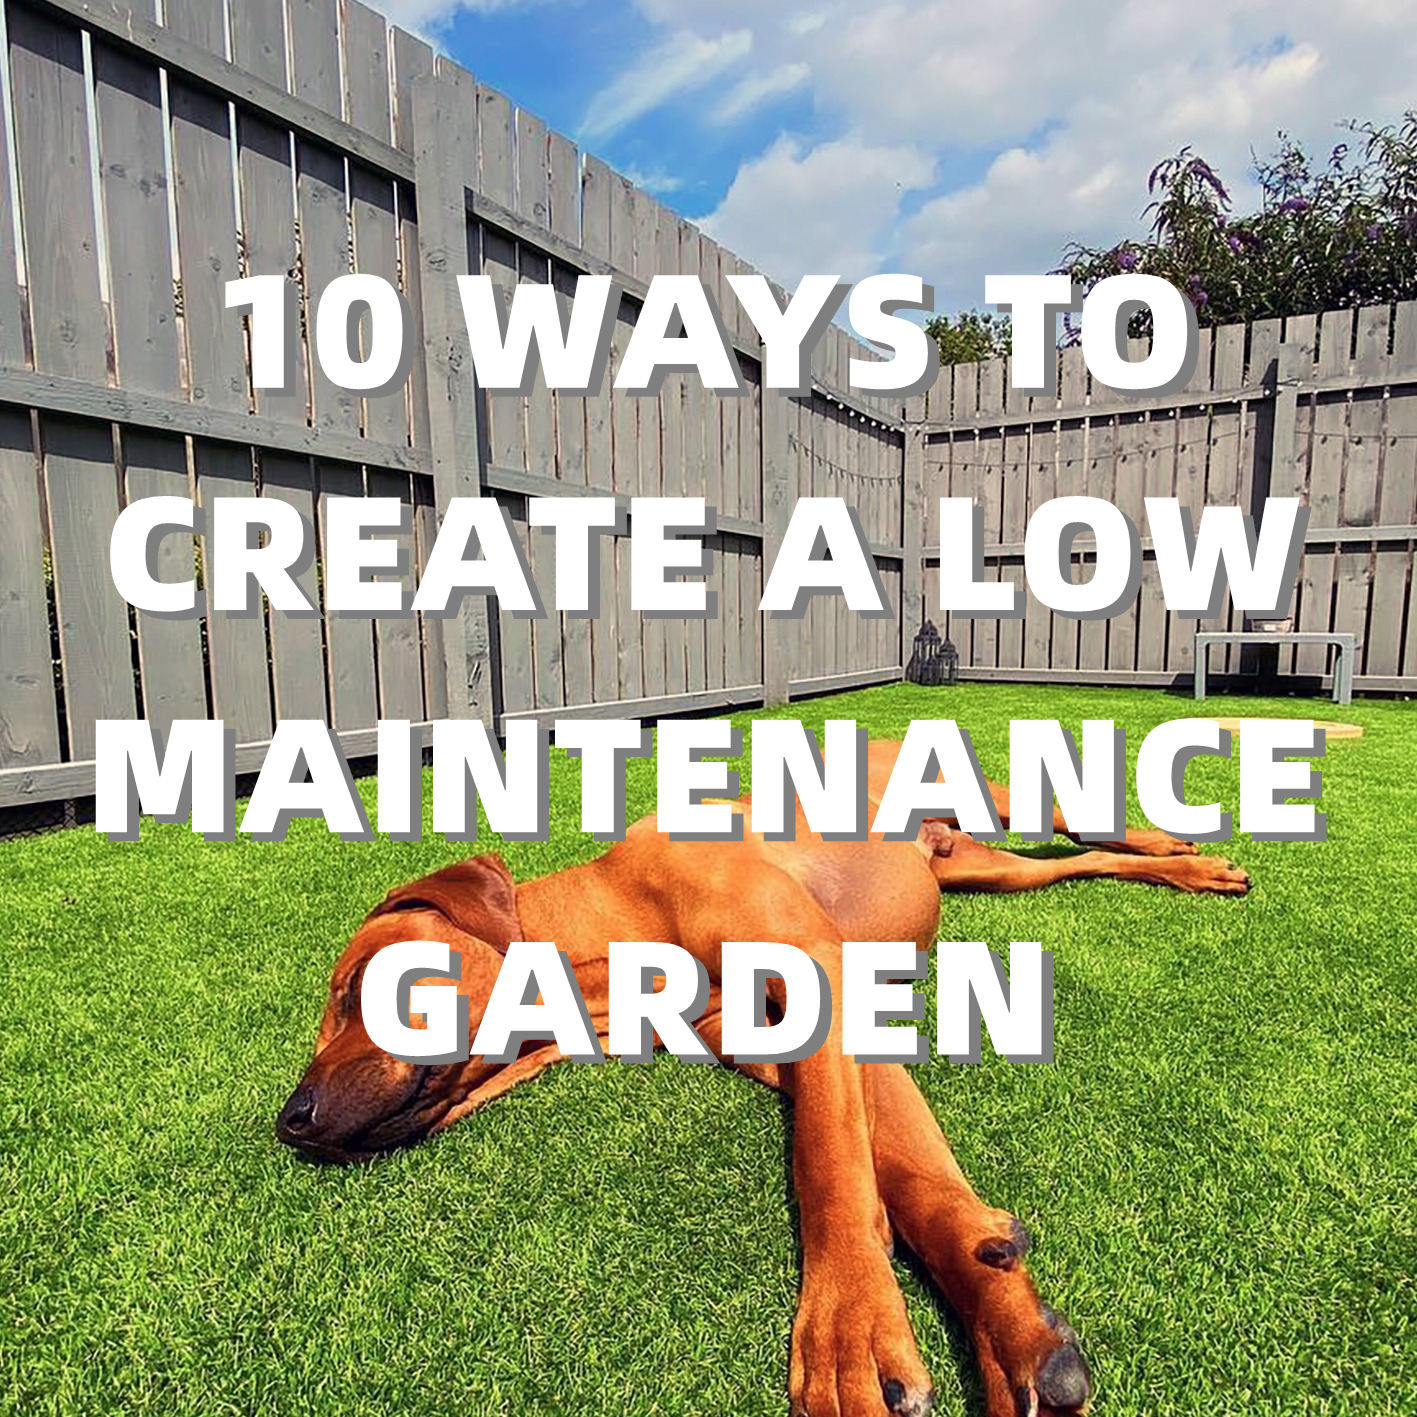 メンテナンスの少ない庭を作る 10 の方法